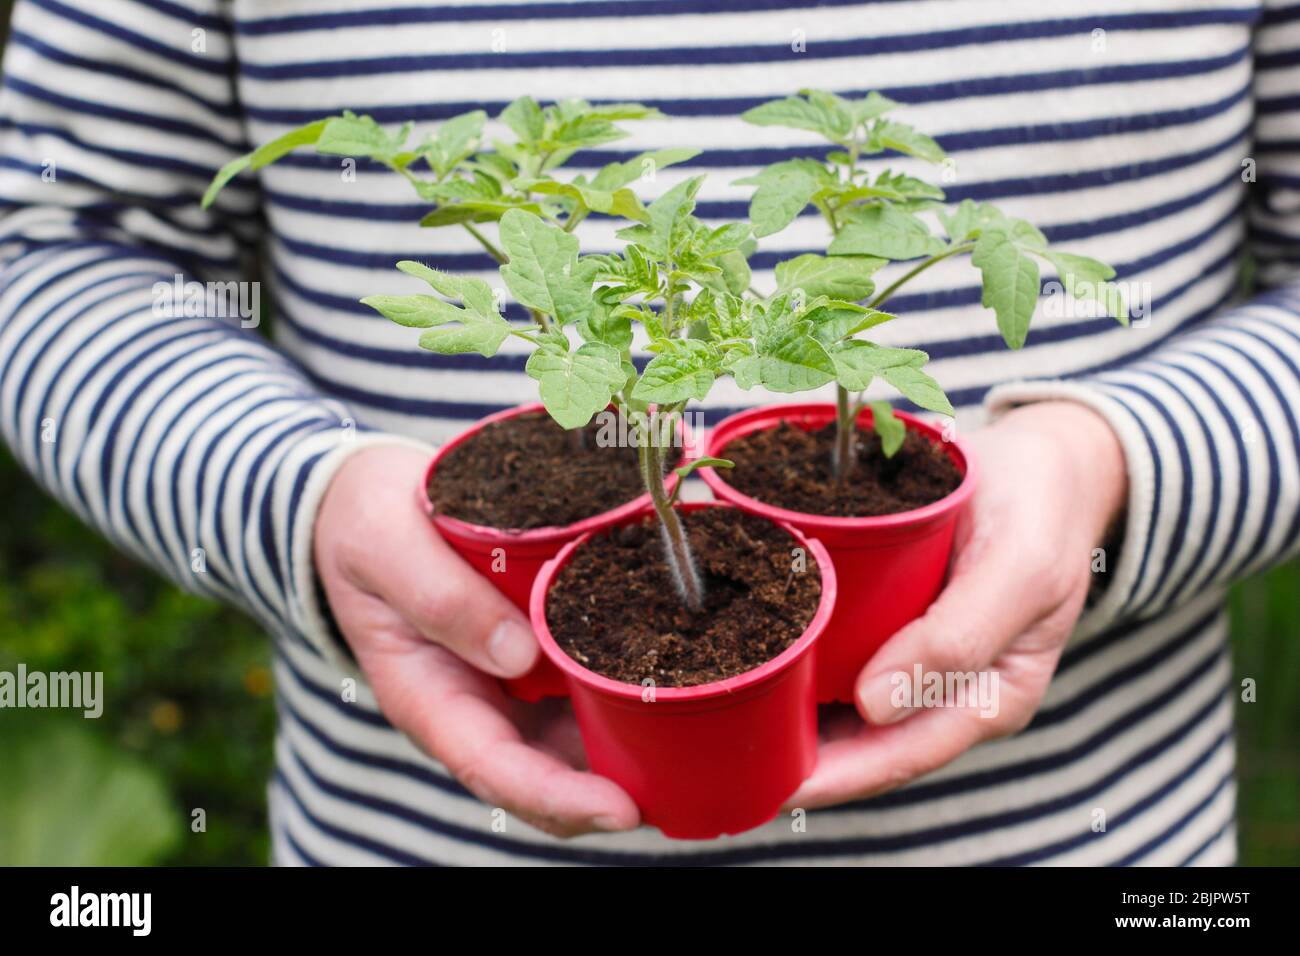 Solanum lycopersicum 'Alicante'. Plantes de tomates cultivées à la maison dans des pots en plastique réutilisés prêts pour la transplantation dans une plus grande casserole ou un sac de croissance. ROYAUME-UNI Banque D'Images